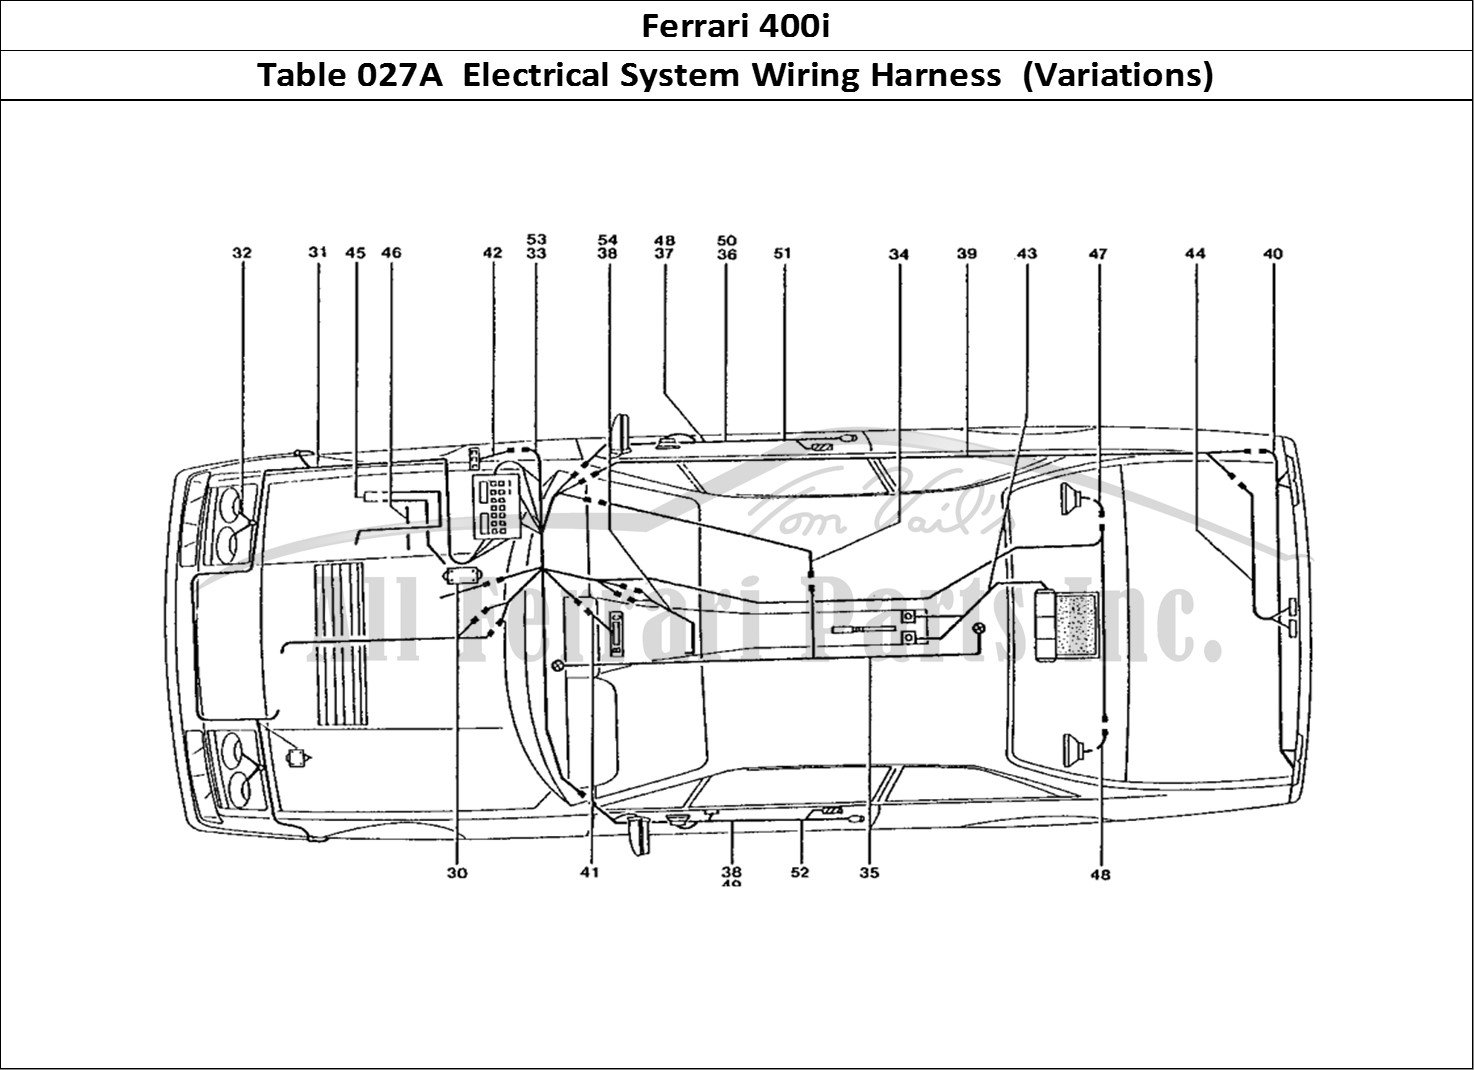 Ferrari Parts Ferrari 400 GT (Coachwork) Page 027 Car Loom (Variations)